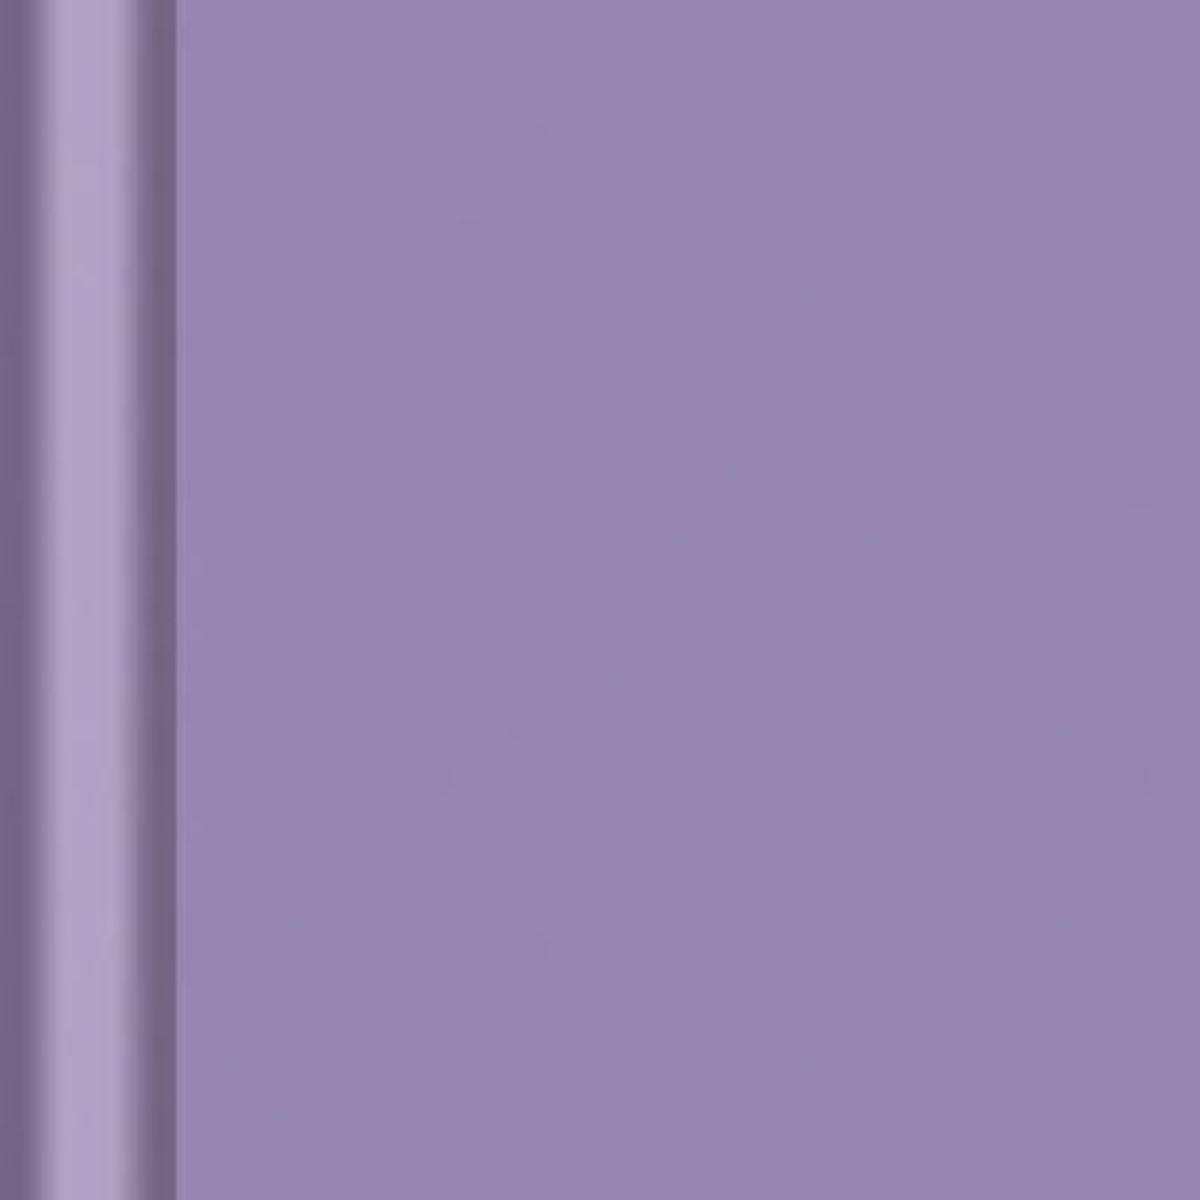 Nappe en rouleau papier gaufre amethyste - 20 x 1,18 m - Papier gaufre - Violet